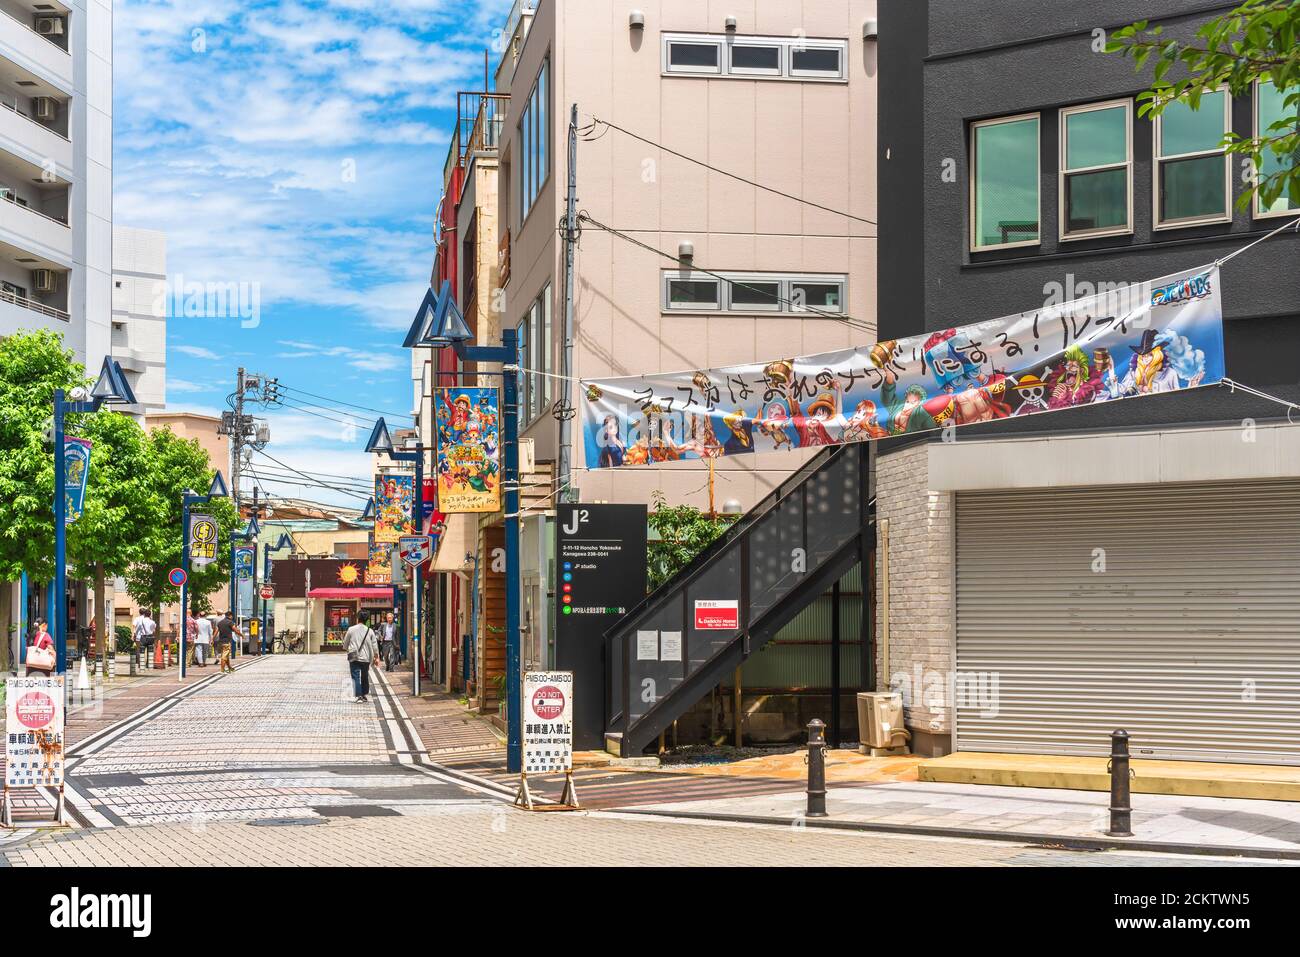 yokosuka, japon - juillet 19 2019 : rue commerçante Dobuita célèbre parmi les marins de la base navale de Yokosuka décorée de drapeaux de personnages de manga One Pi Banque D'Images